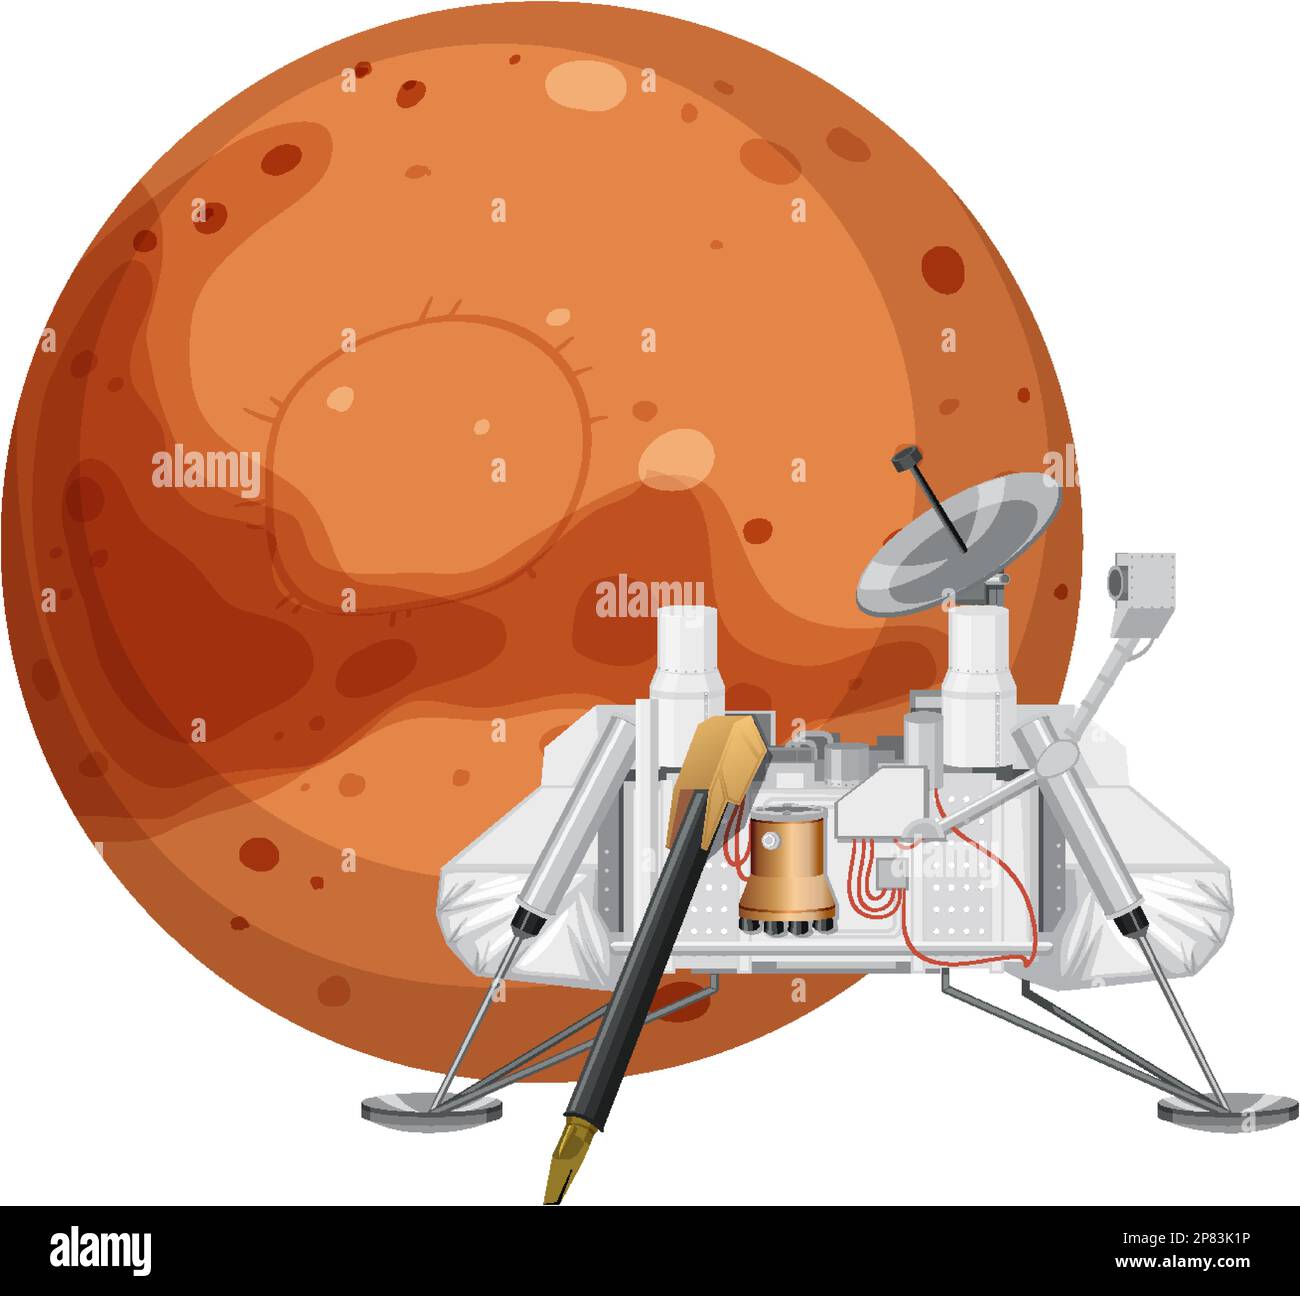 Viking 1 Spacecraft Lander on Mars illustration Stock Vector